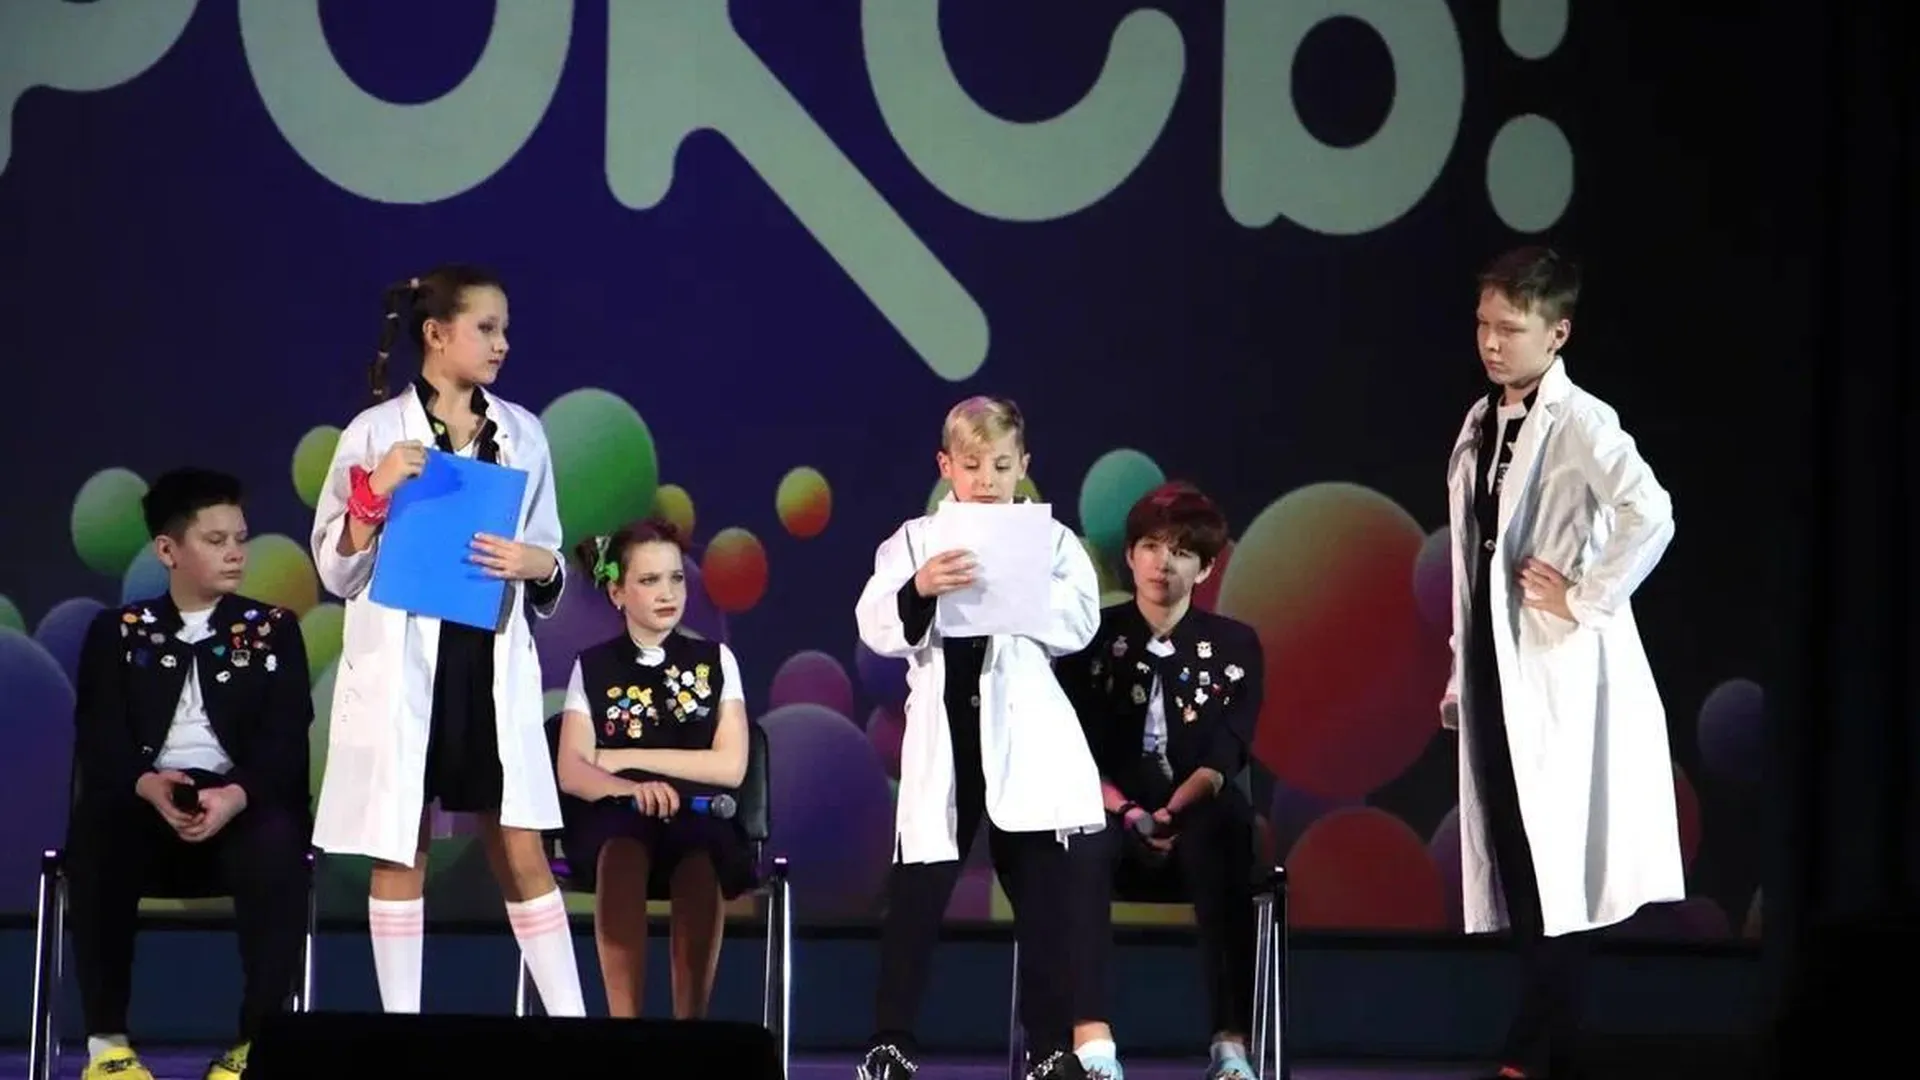 КВН-щики из Красногорска продемонстрировали свой юмор на большой сцене